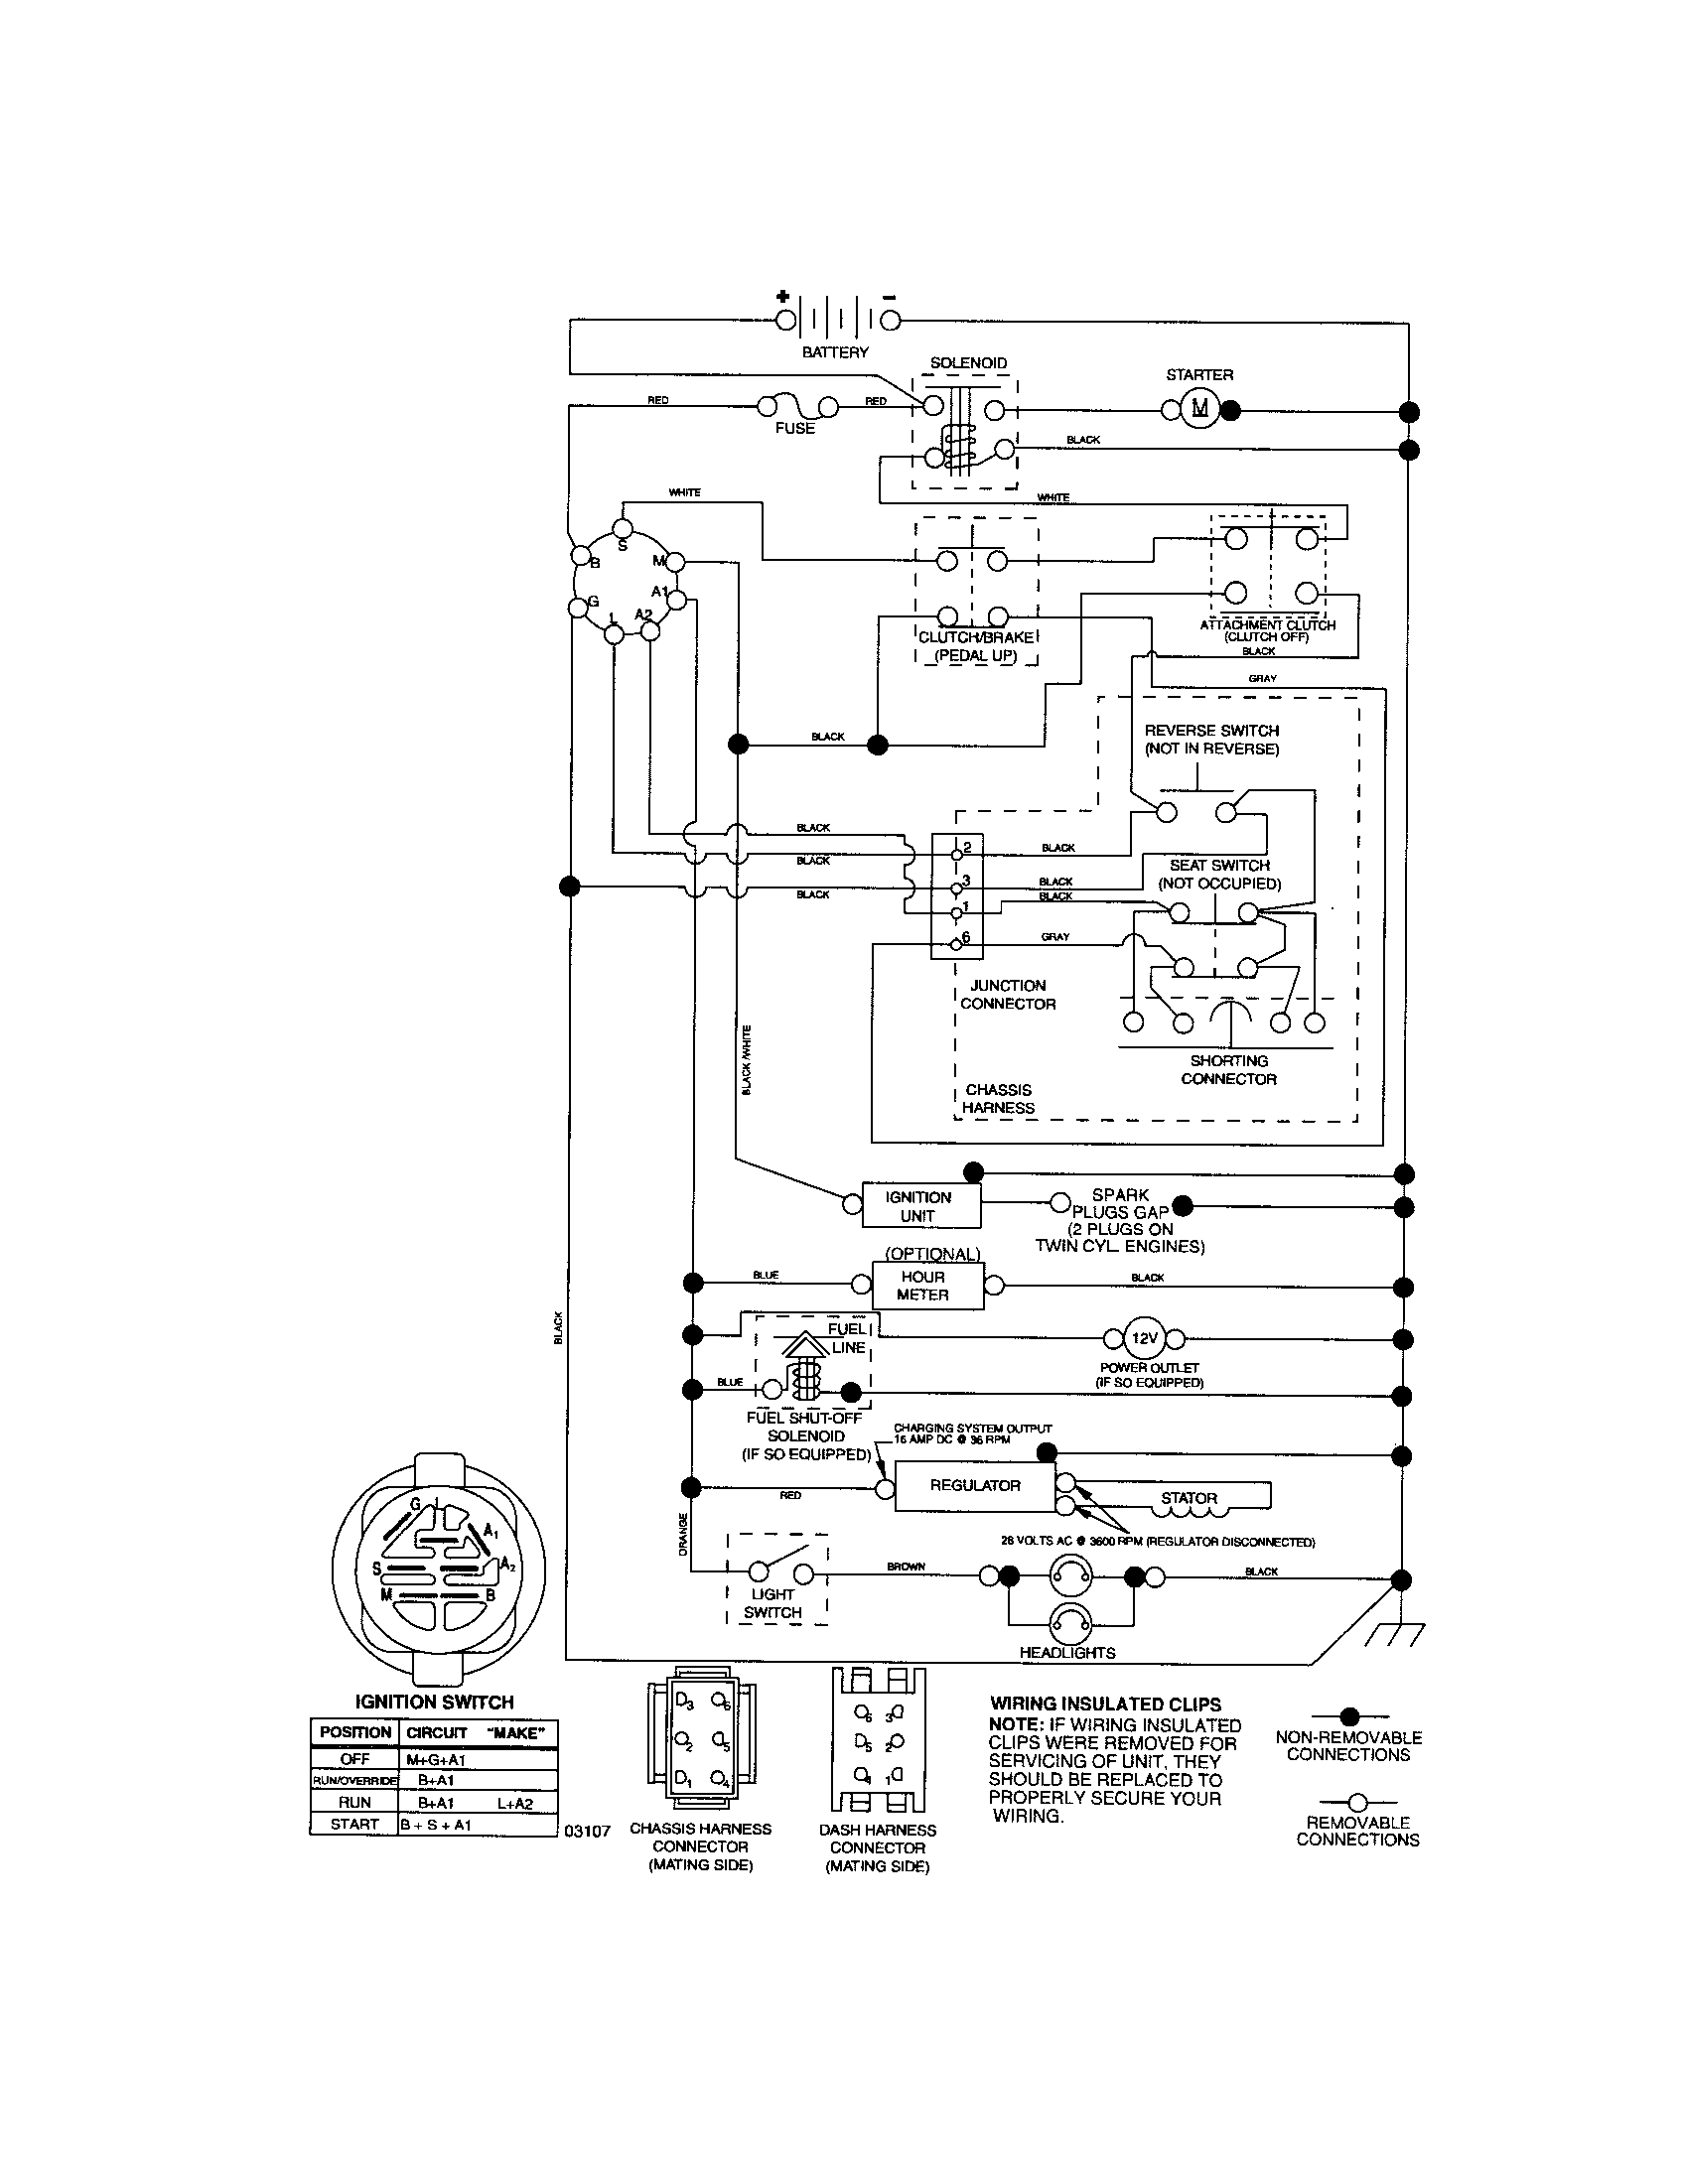 247.29001 wiring diagram